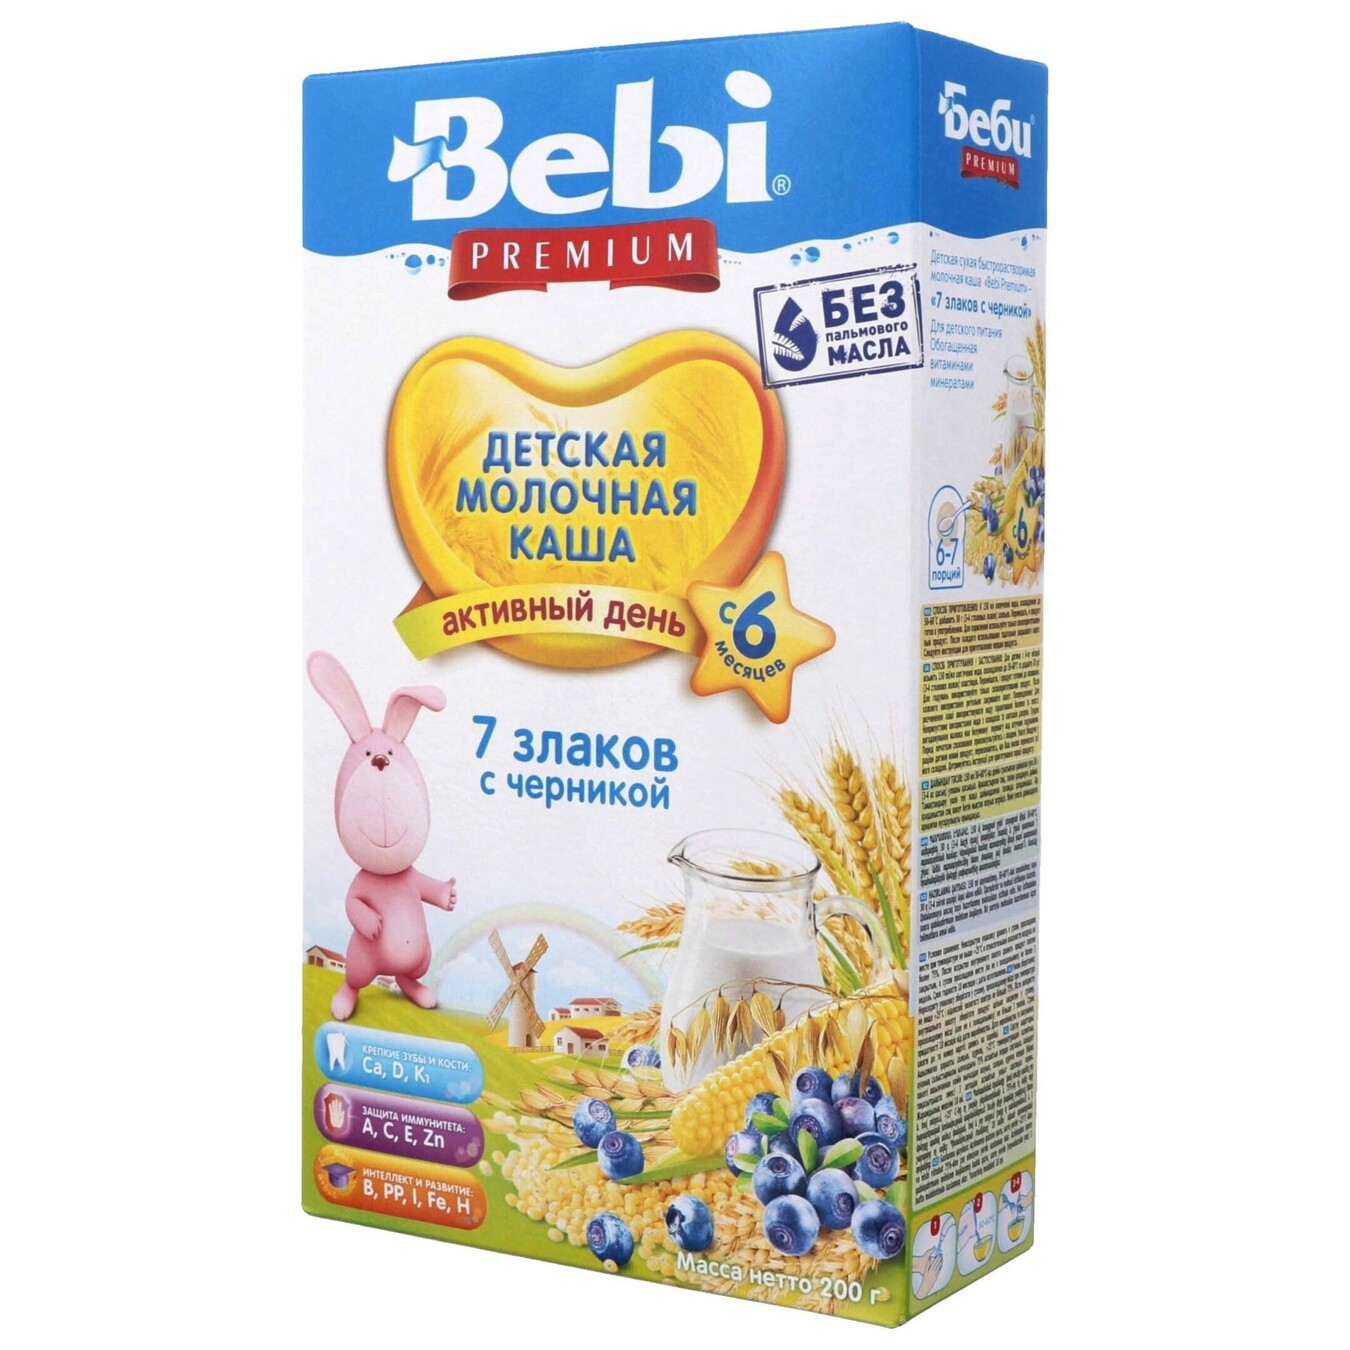 Каша Bebi Premium молочная 7 злаков с черникой 200г 2